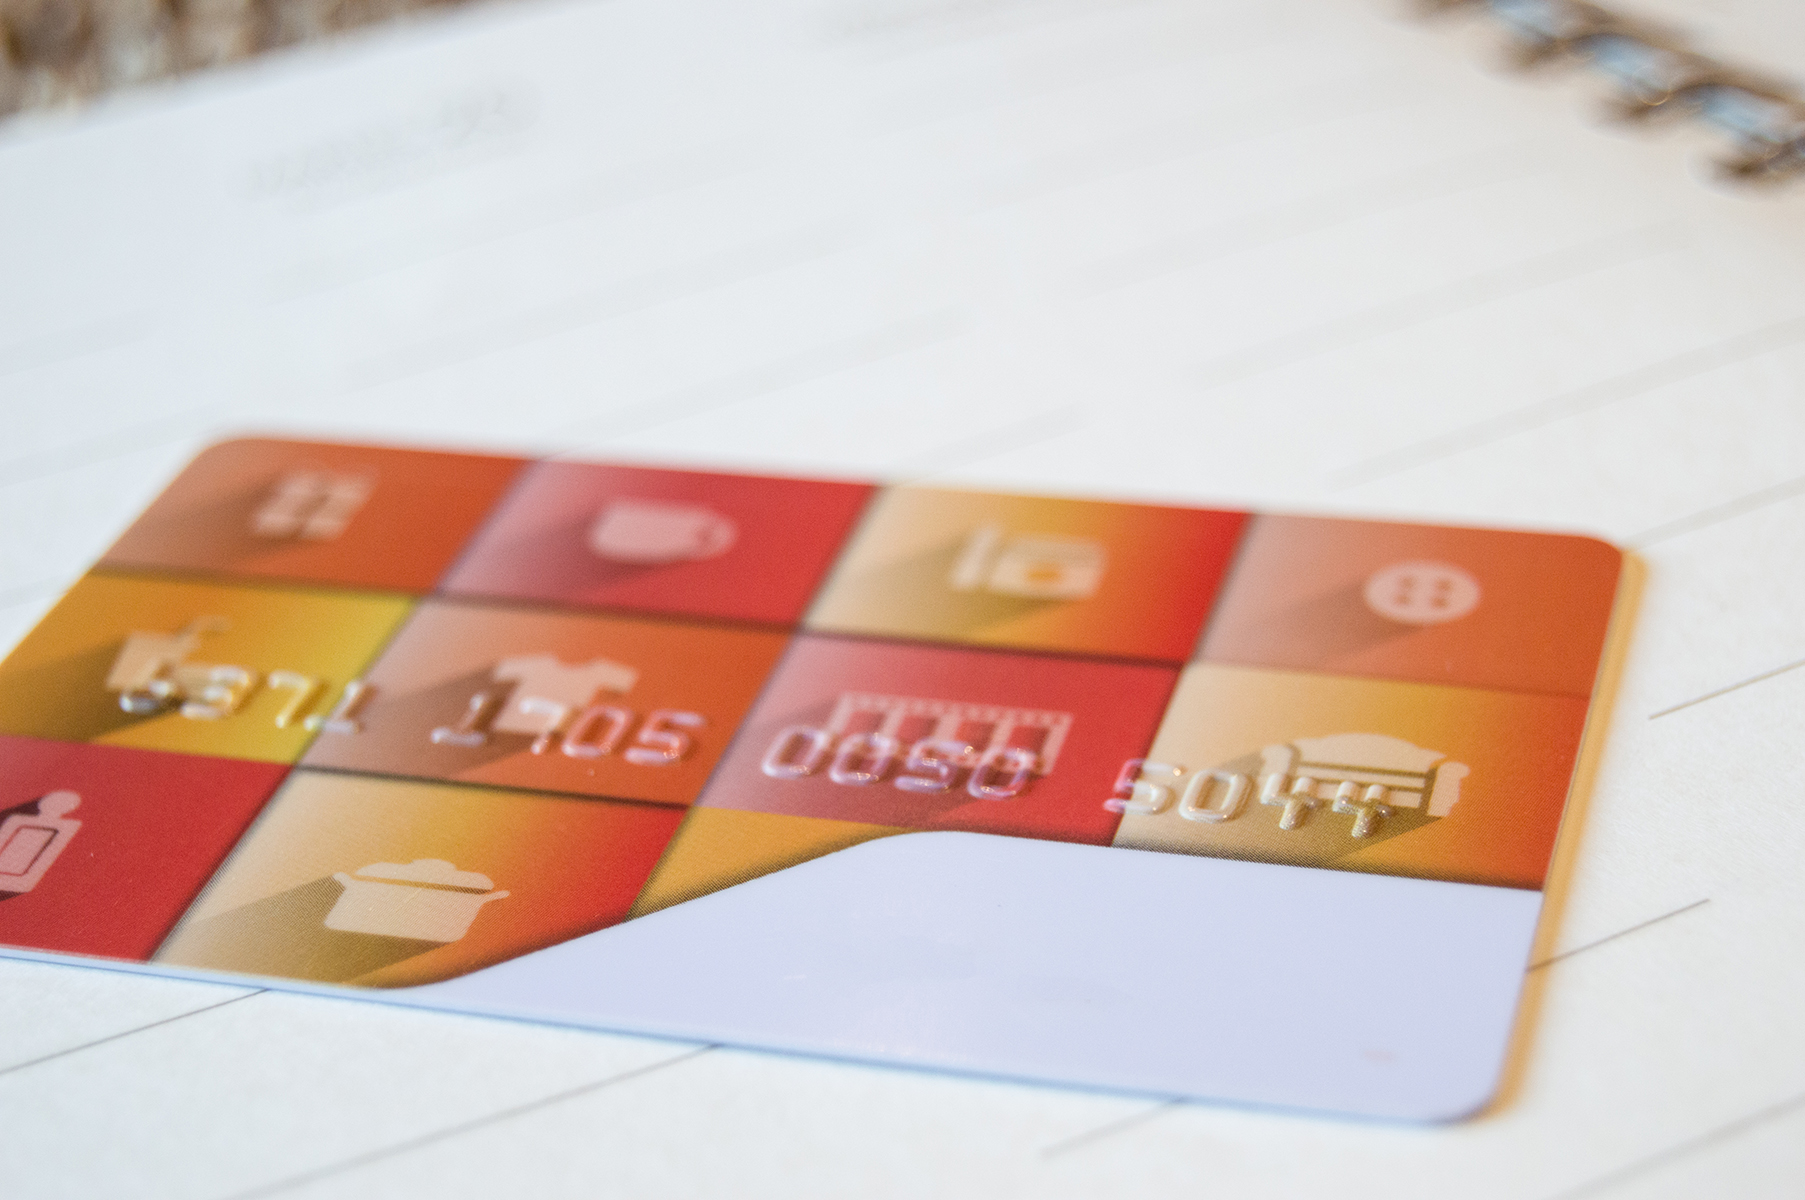 personalizacion de tarjetas plásticas impresión de numeración en relieve